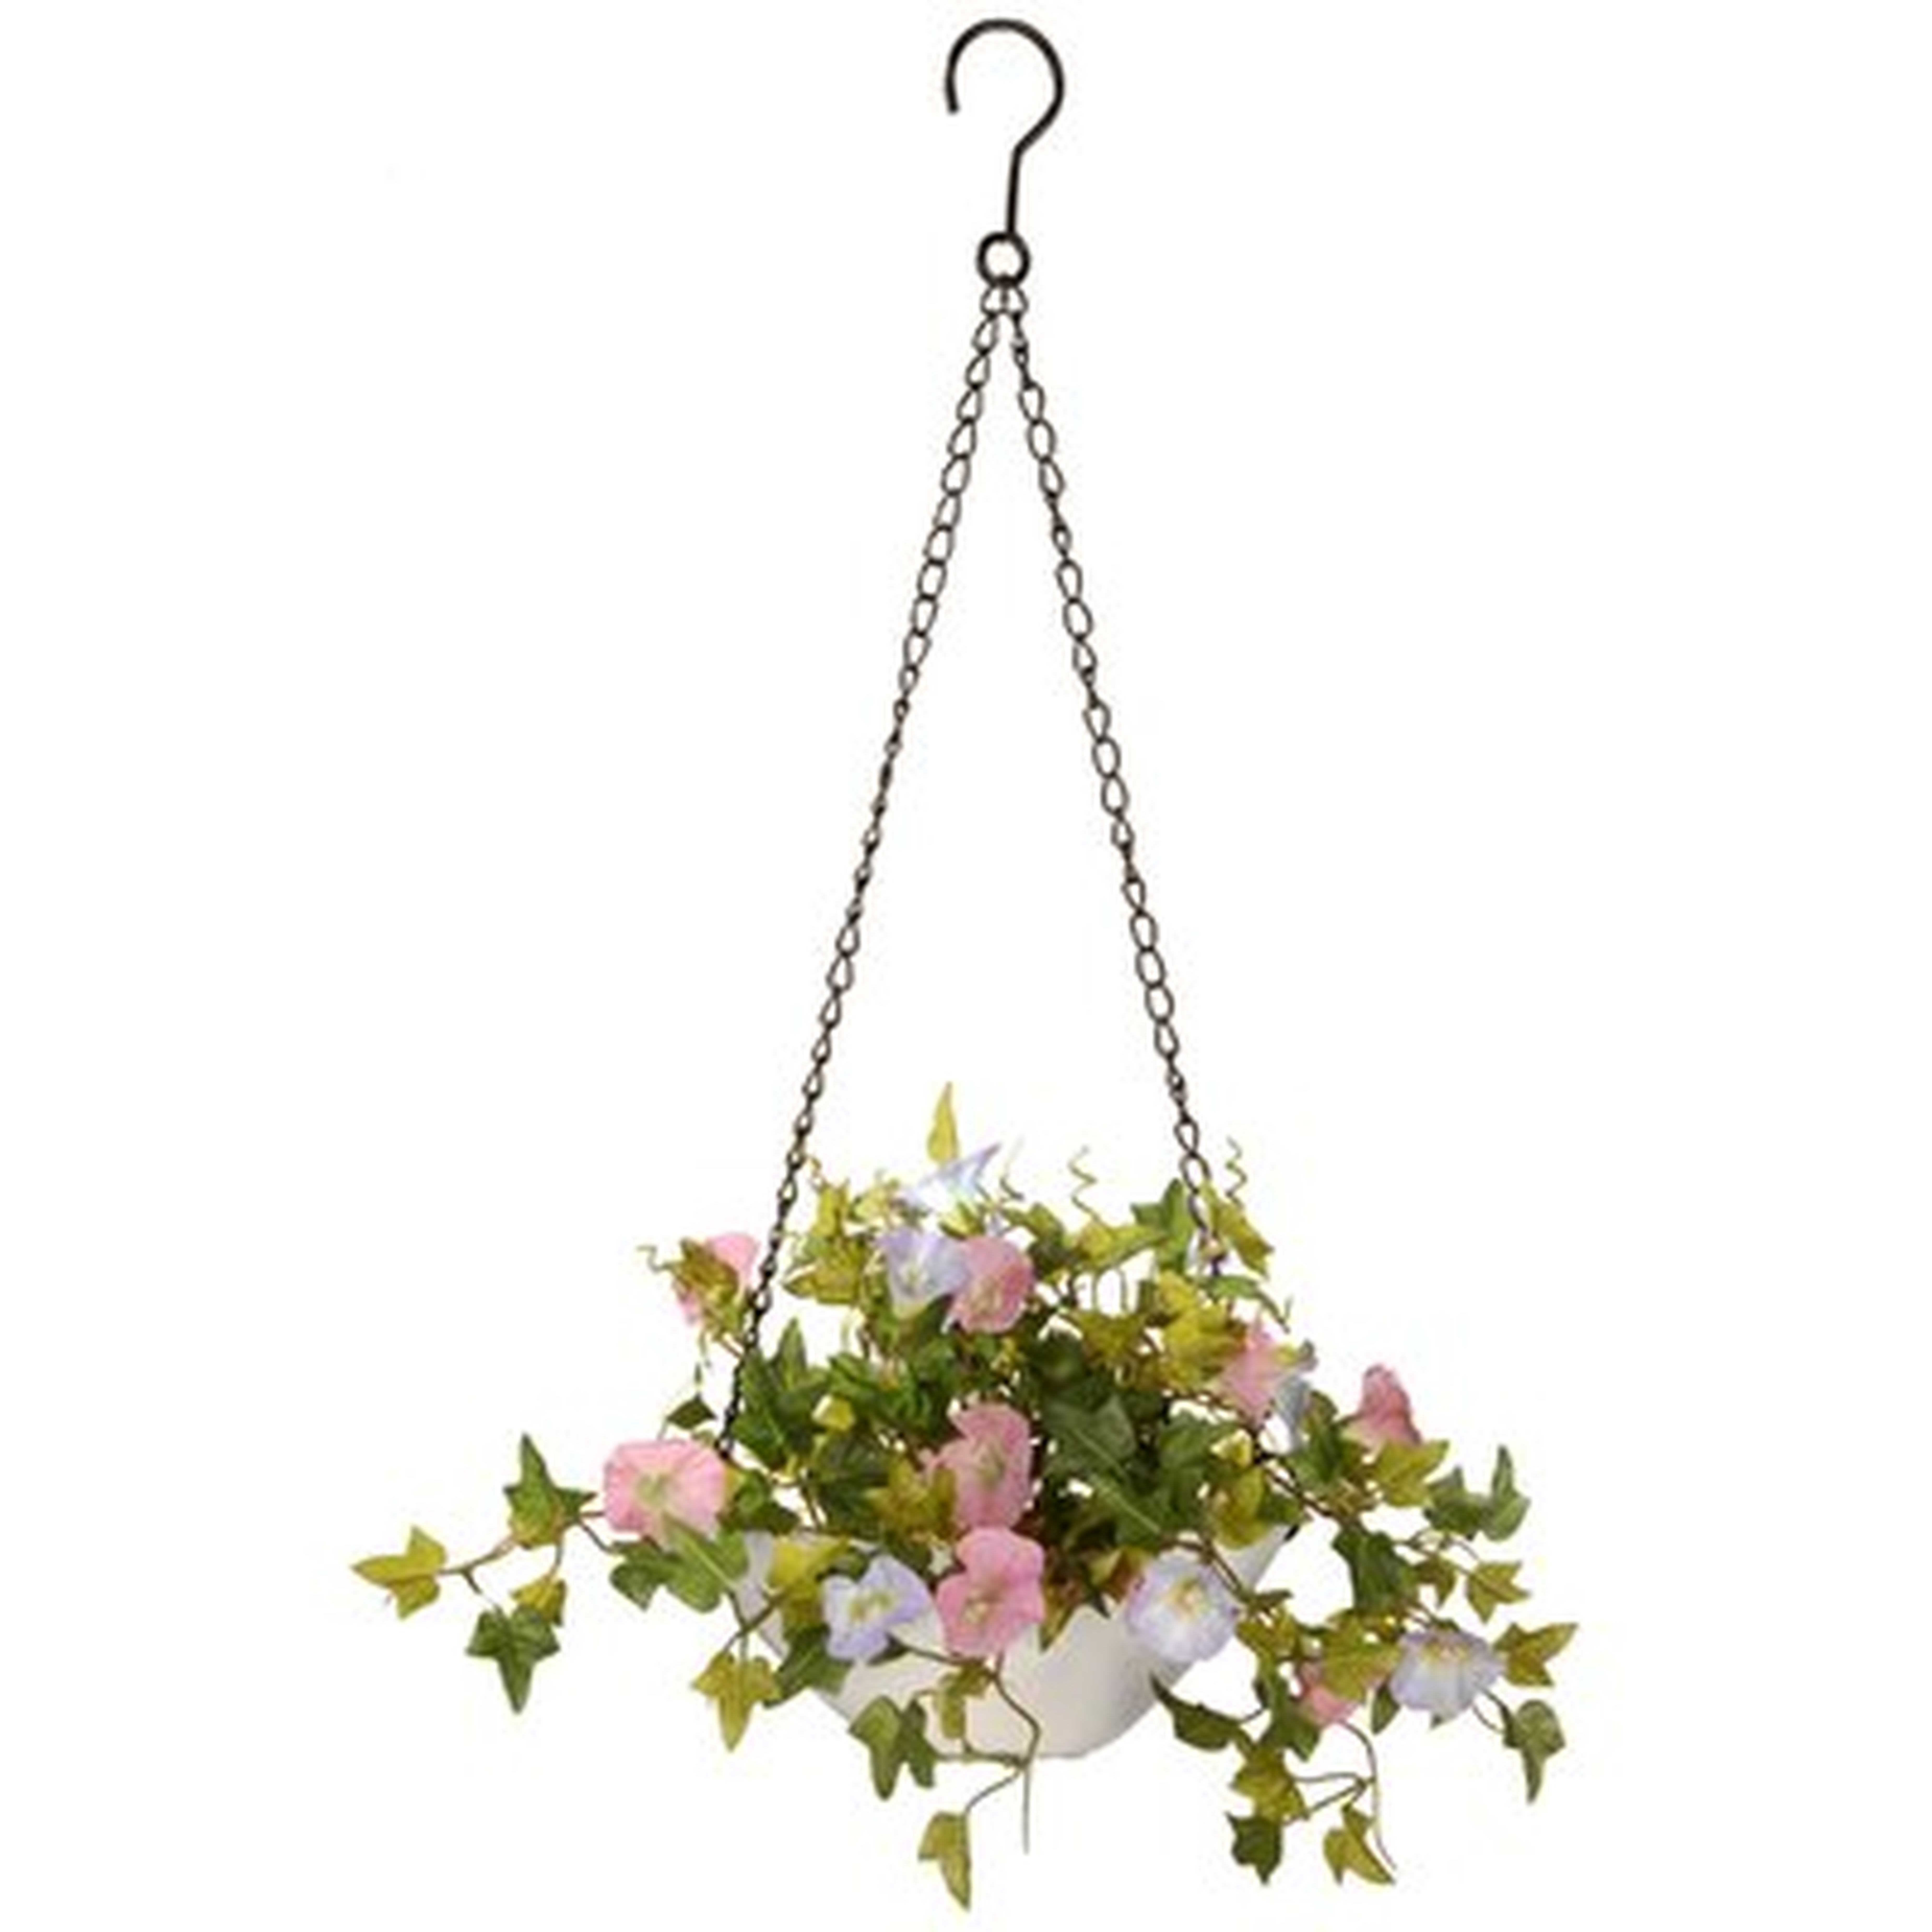 Hanging Flowering Plant in Basket - Wayfair